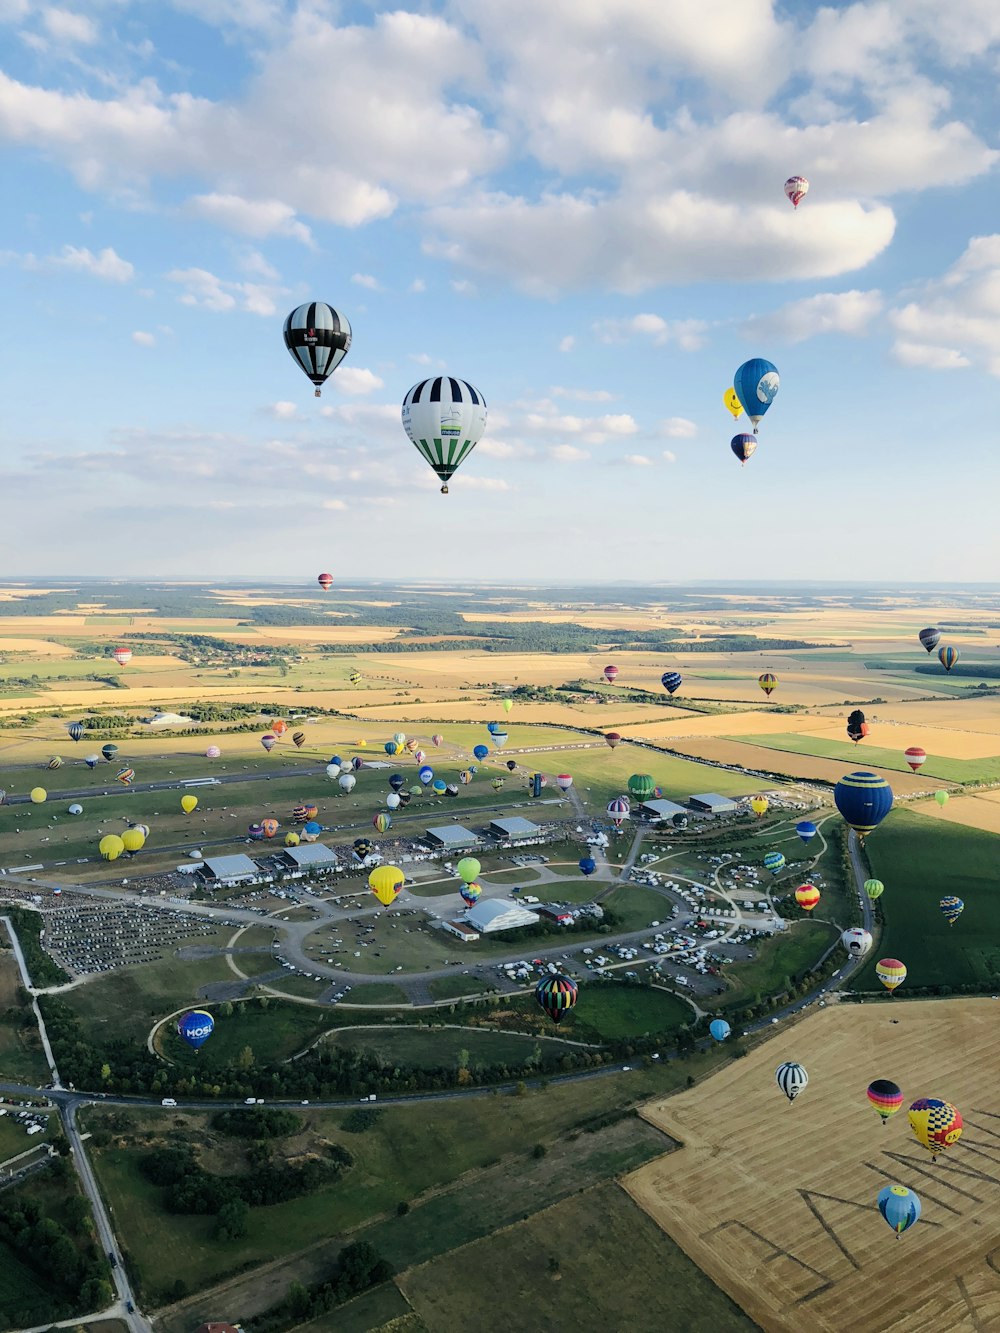 montgolfières volant au-dessus d’un champ vert pendant la journée